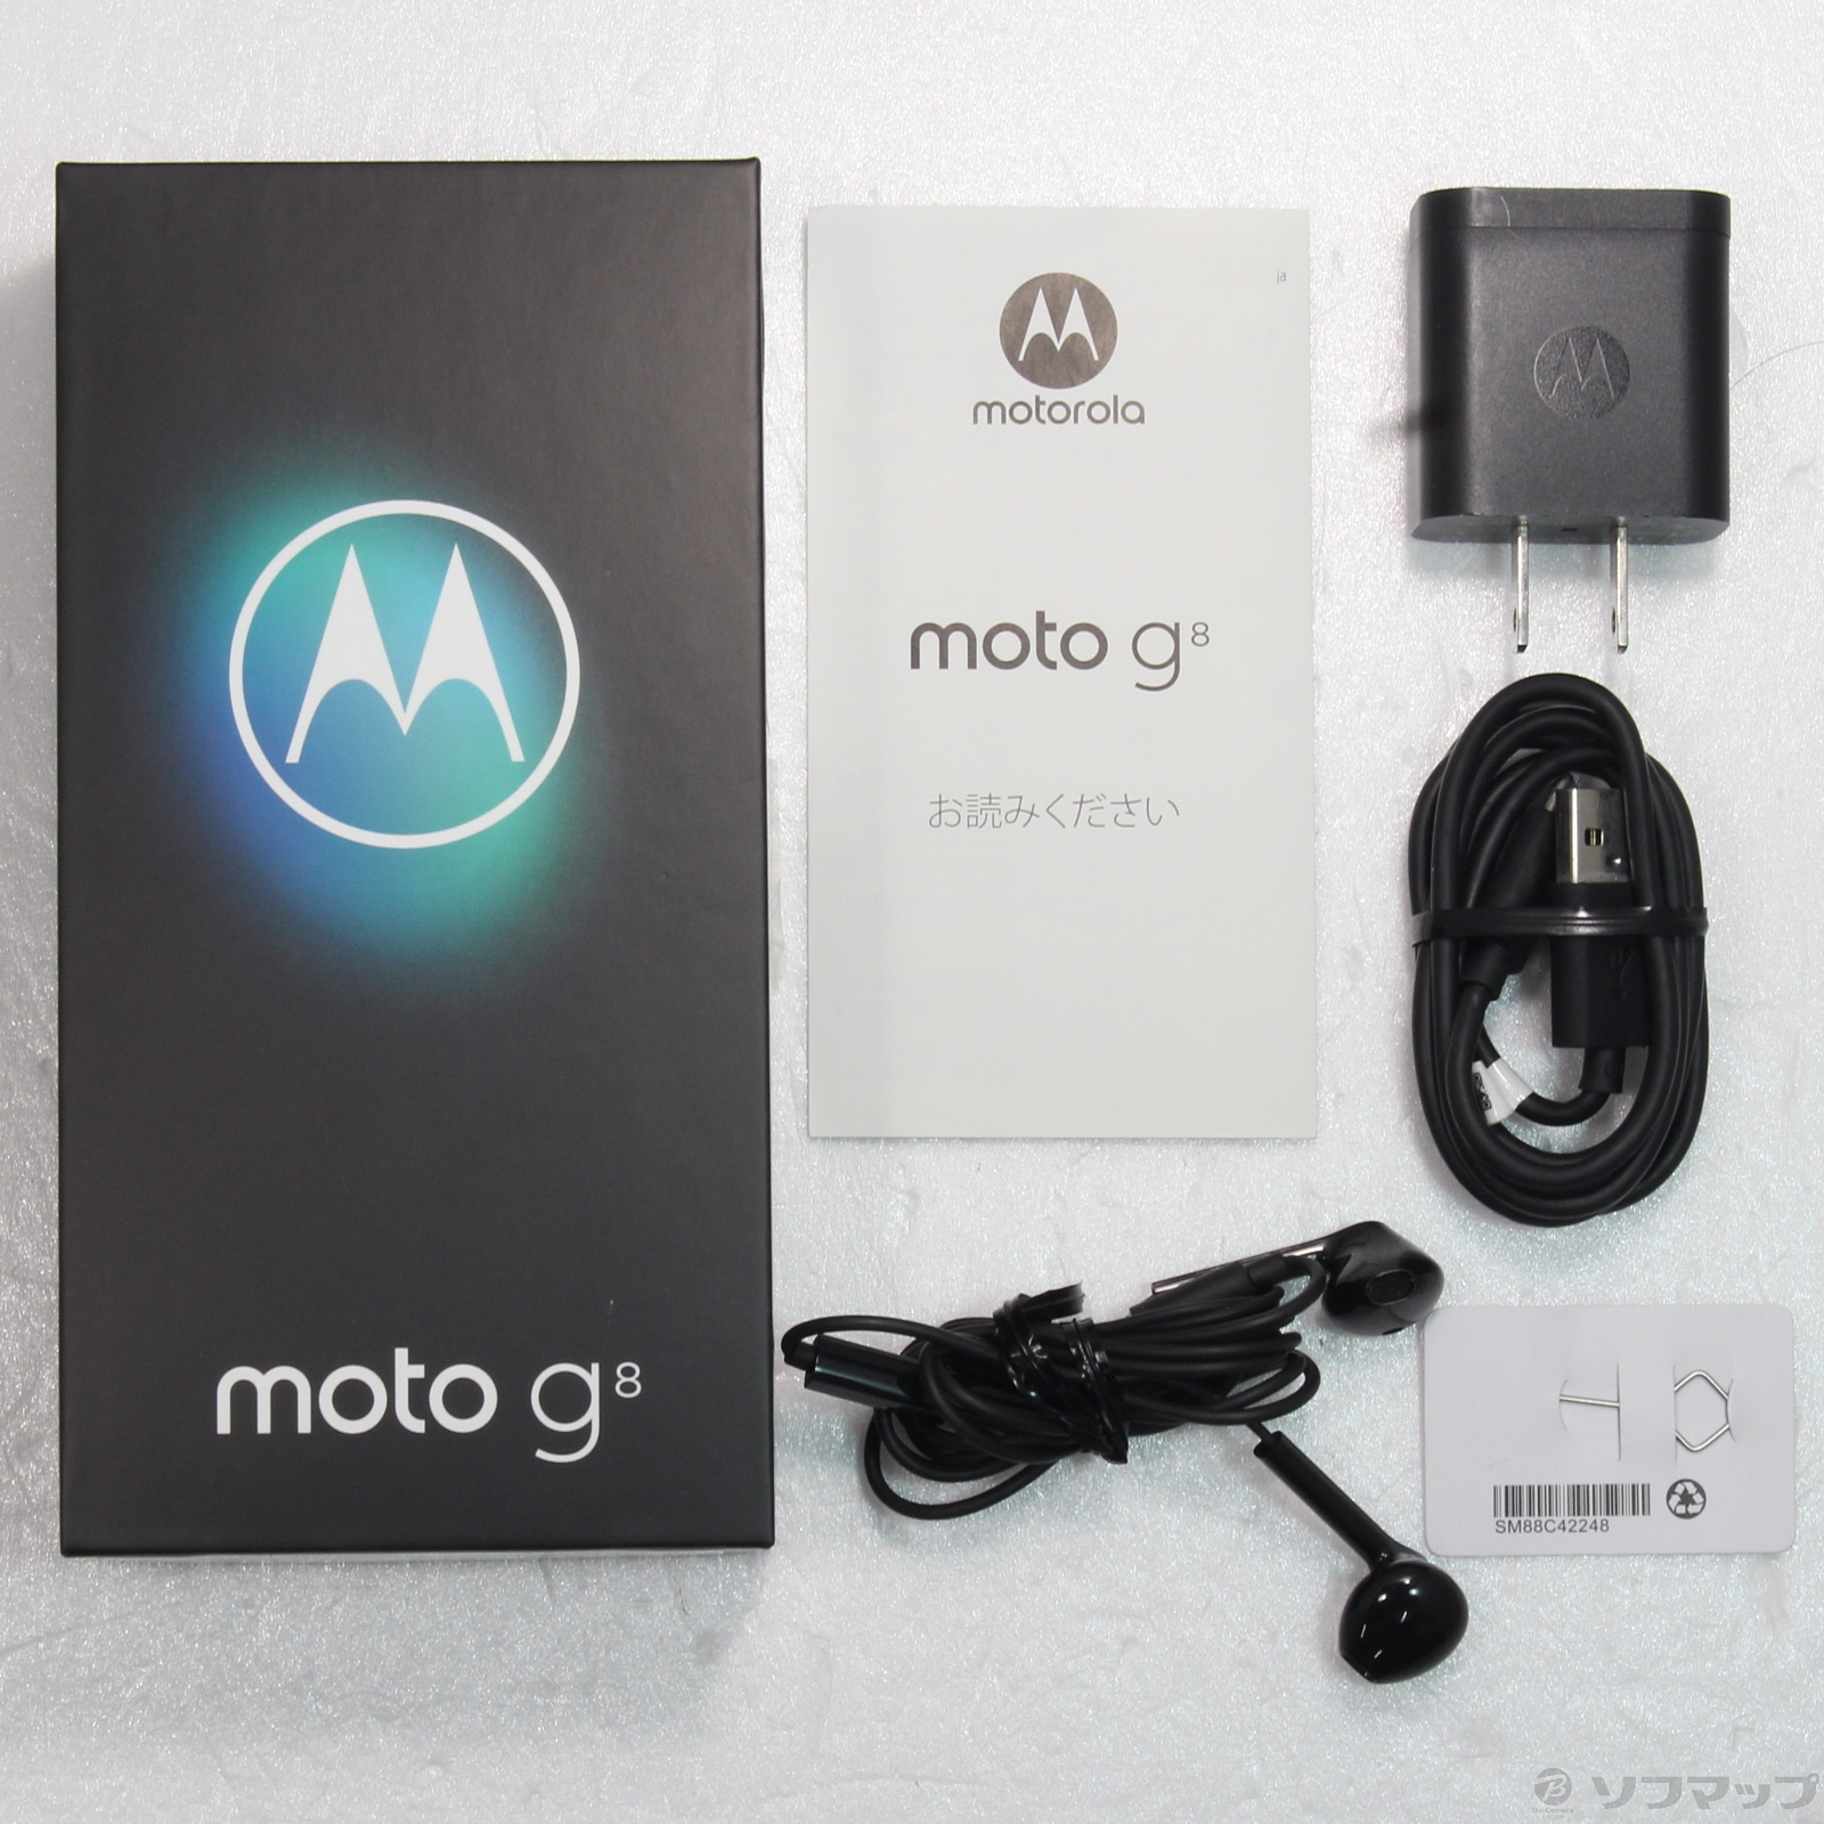 中古】Moto G8 64GB ノイエブルー PAJG0000JP SIMフリー ◇02/08(水 ...